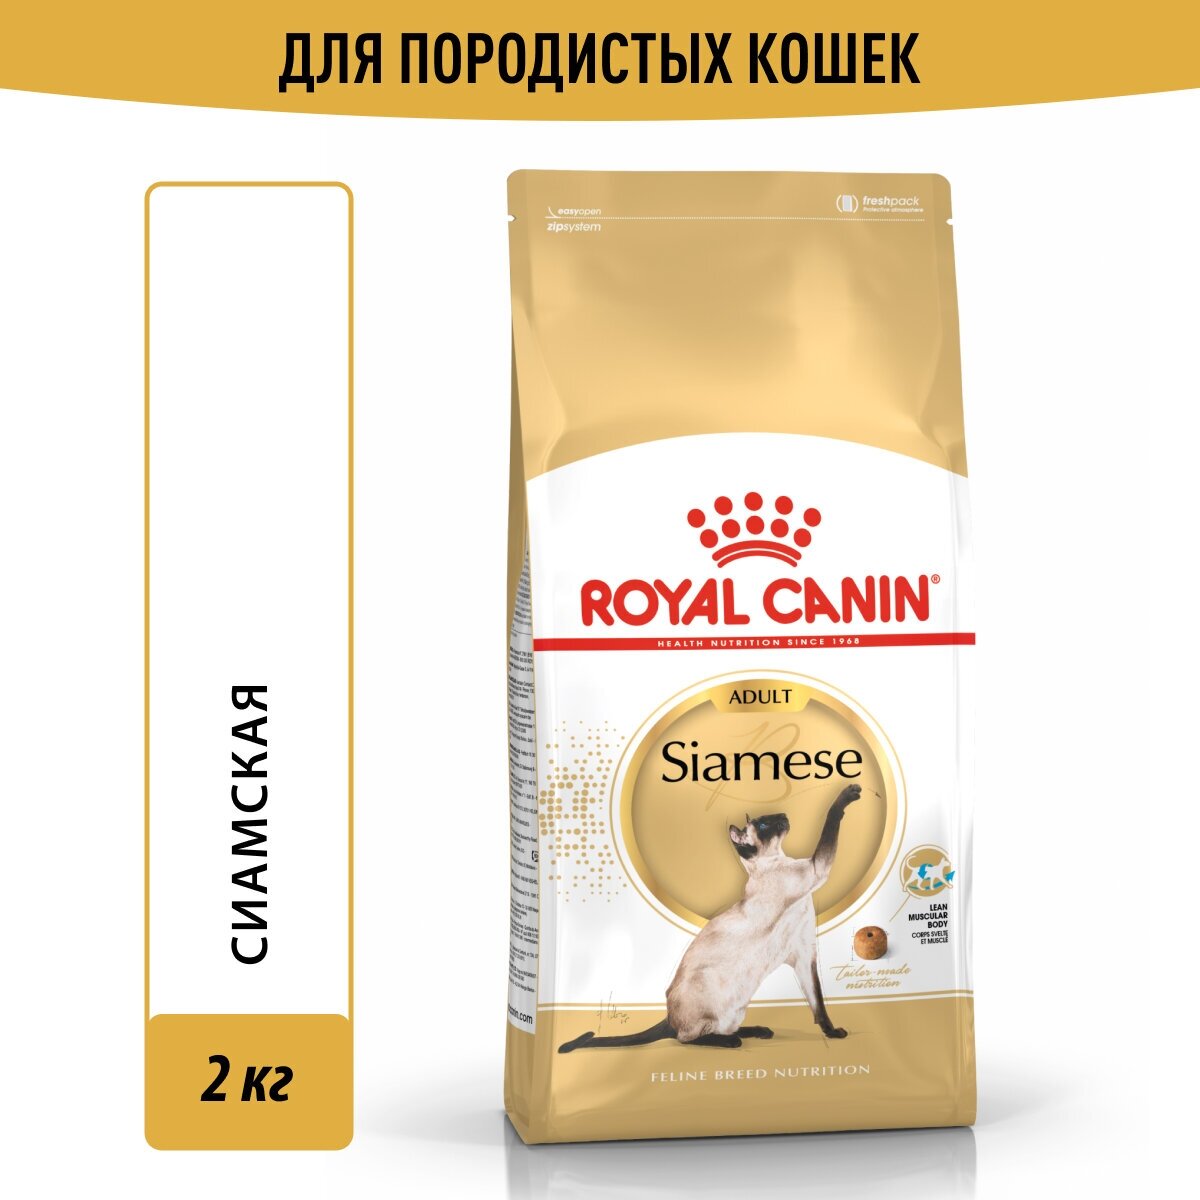 Сухой корм для кошек Royal Canin Siamese Adult для взрослых сиамских кошек от 1 года до 12 лет